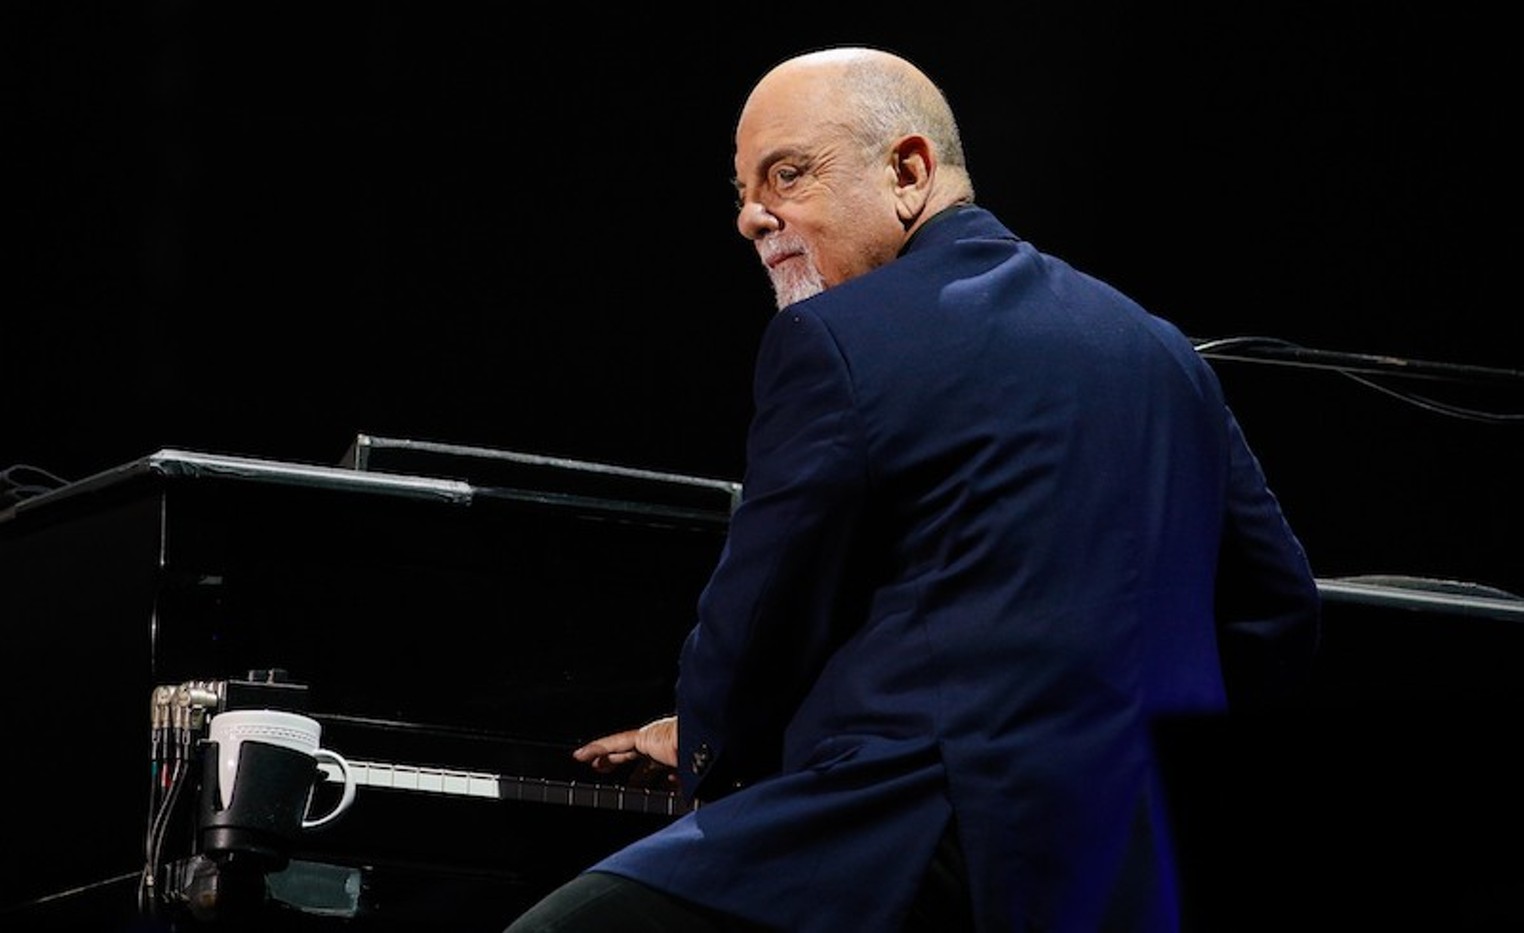 Billy Joel concert in Houston on Sept. 23, 2022